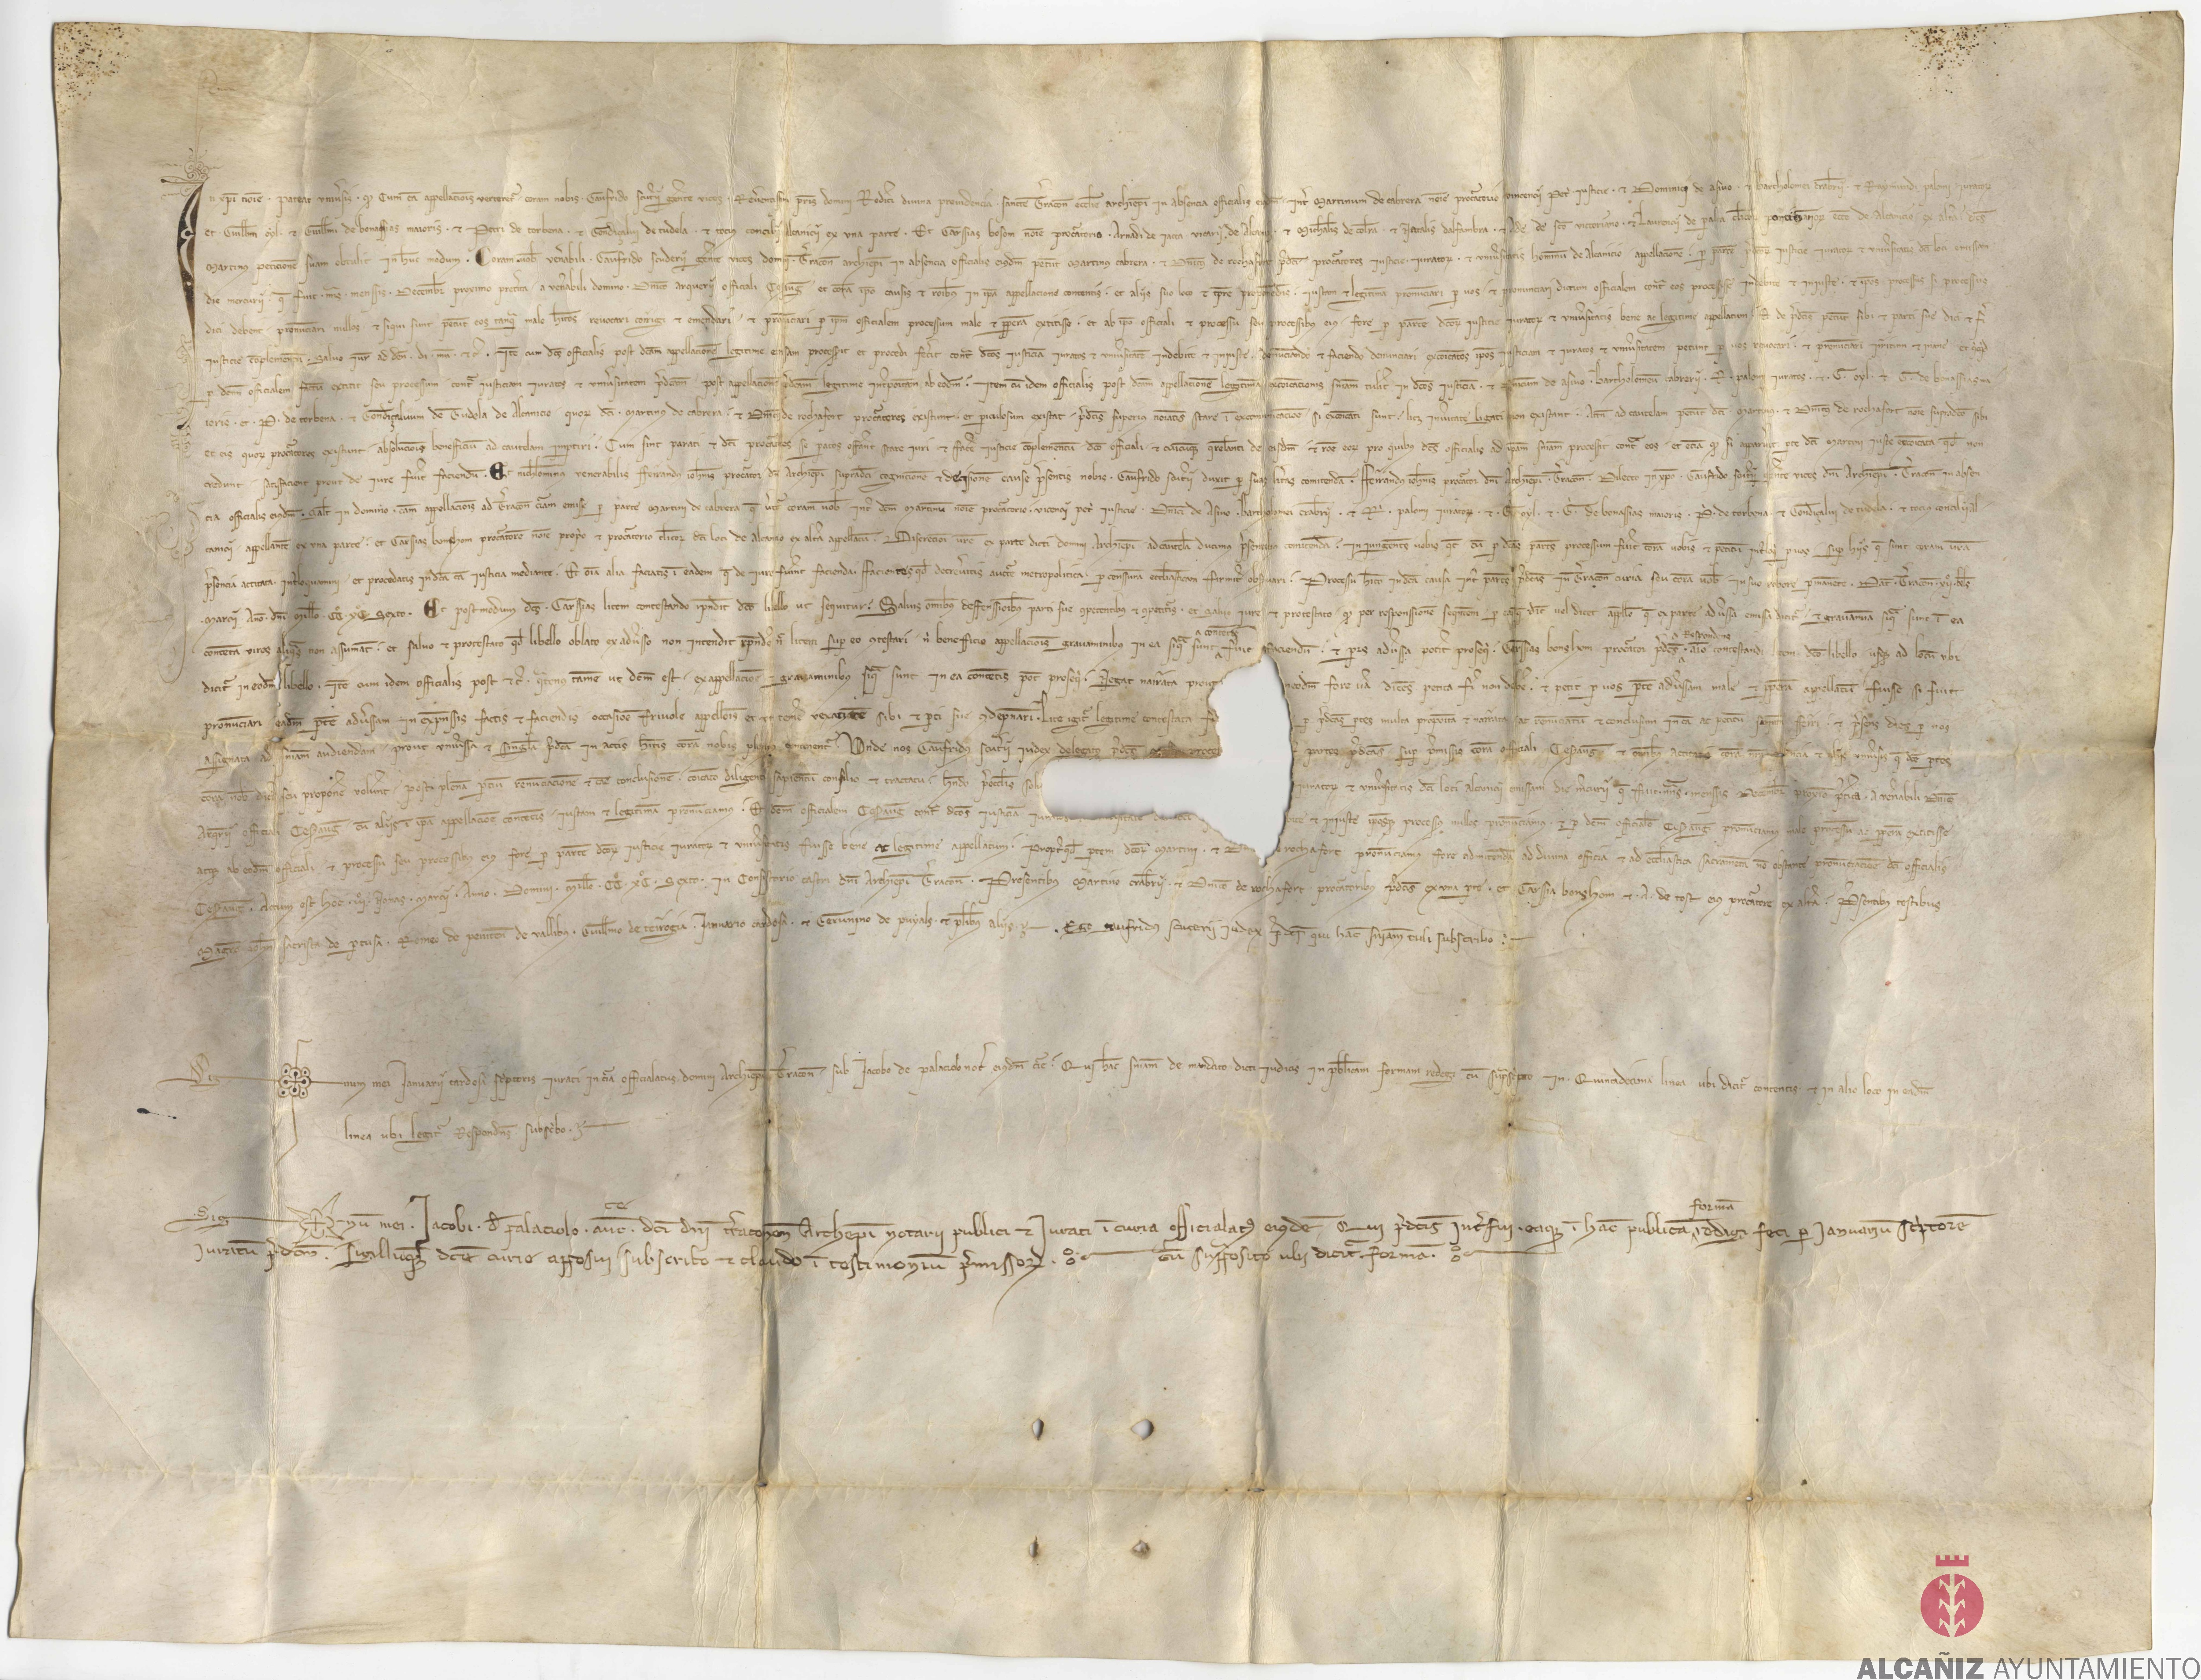 Carta de sentencia dada por Gaufrido Escuder, regente del arzobispo de Terragona, por una cuestión que había entre el vicario y racioneros de la vicaría